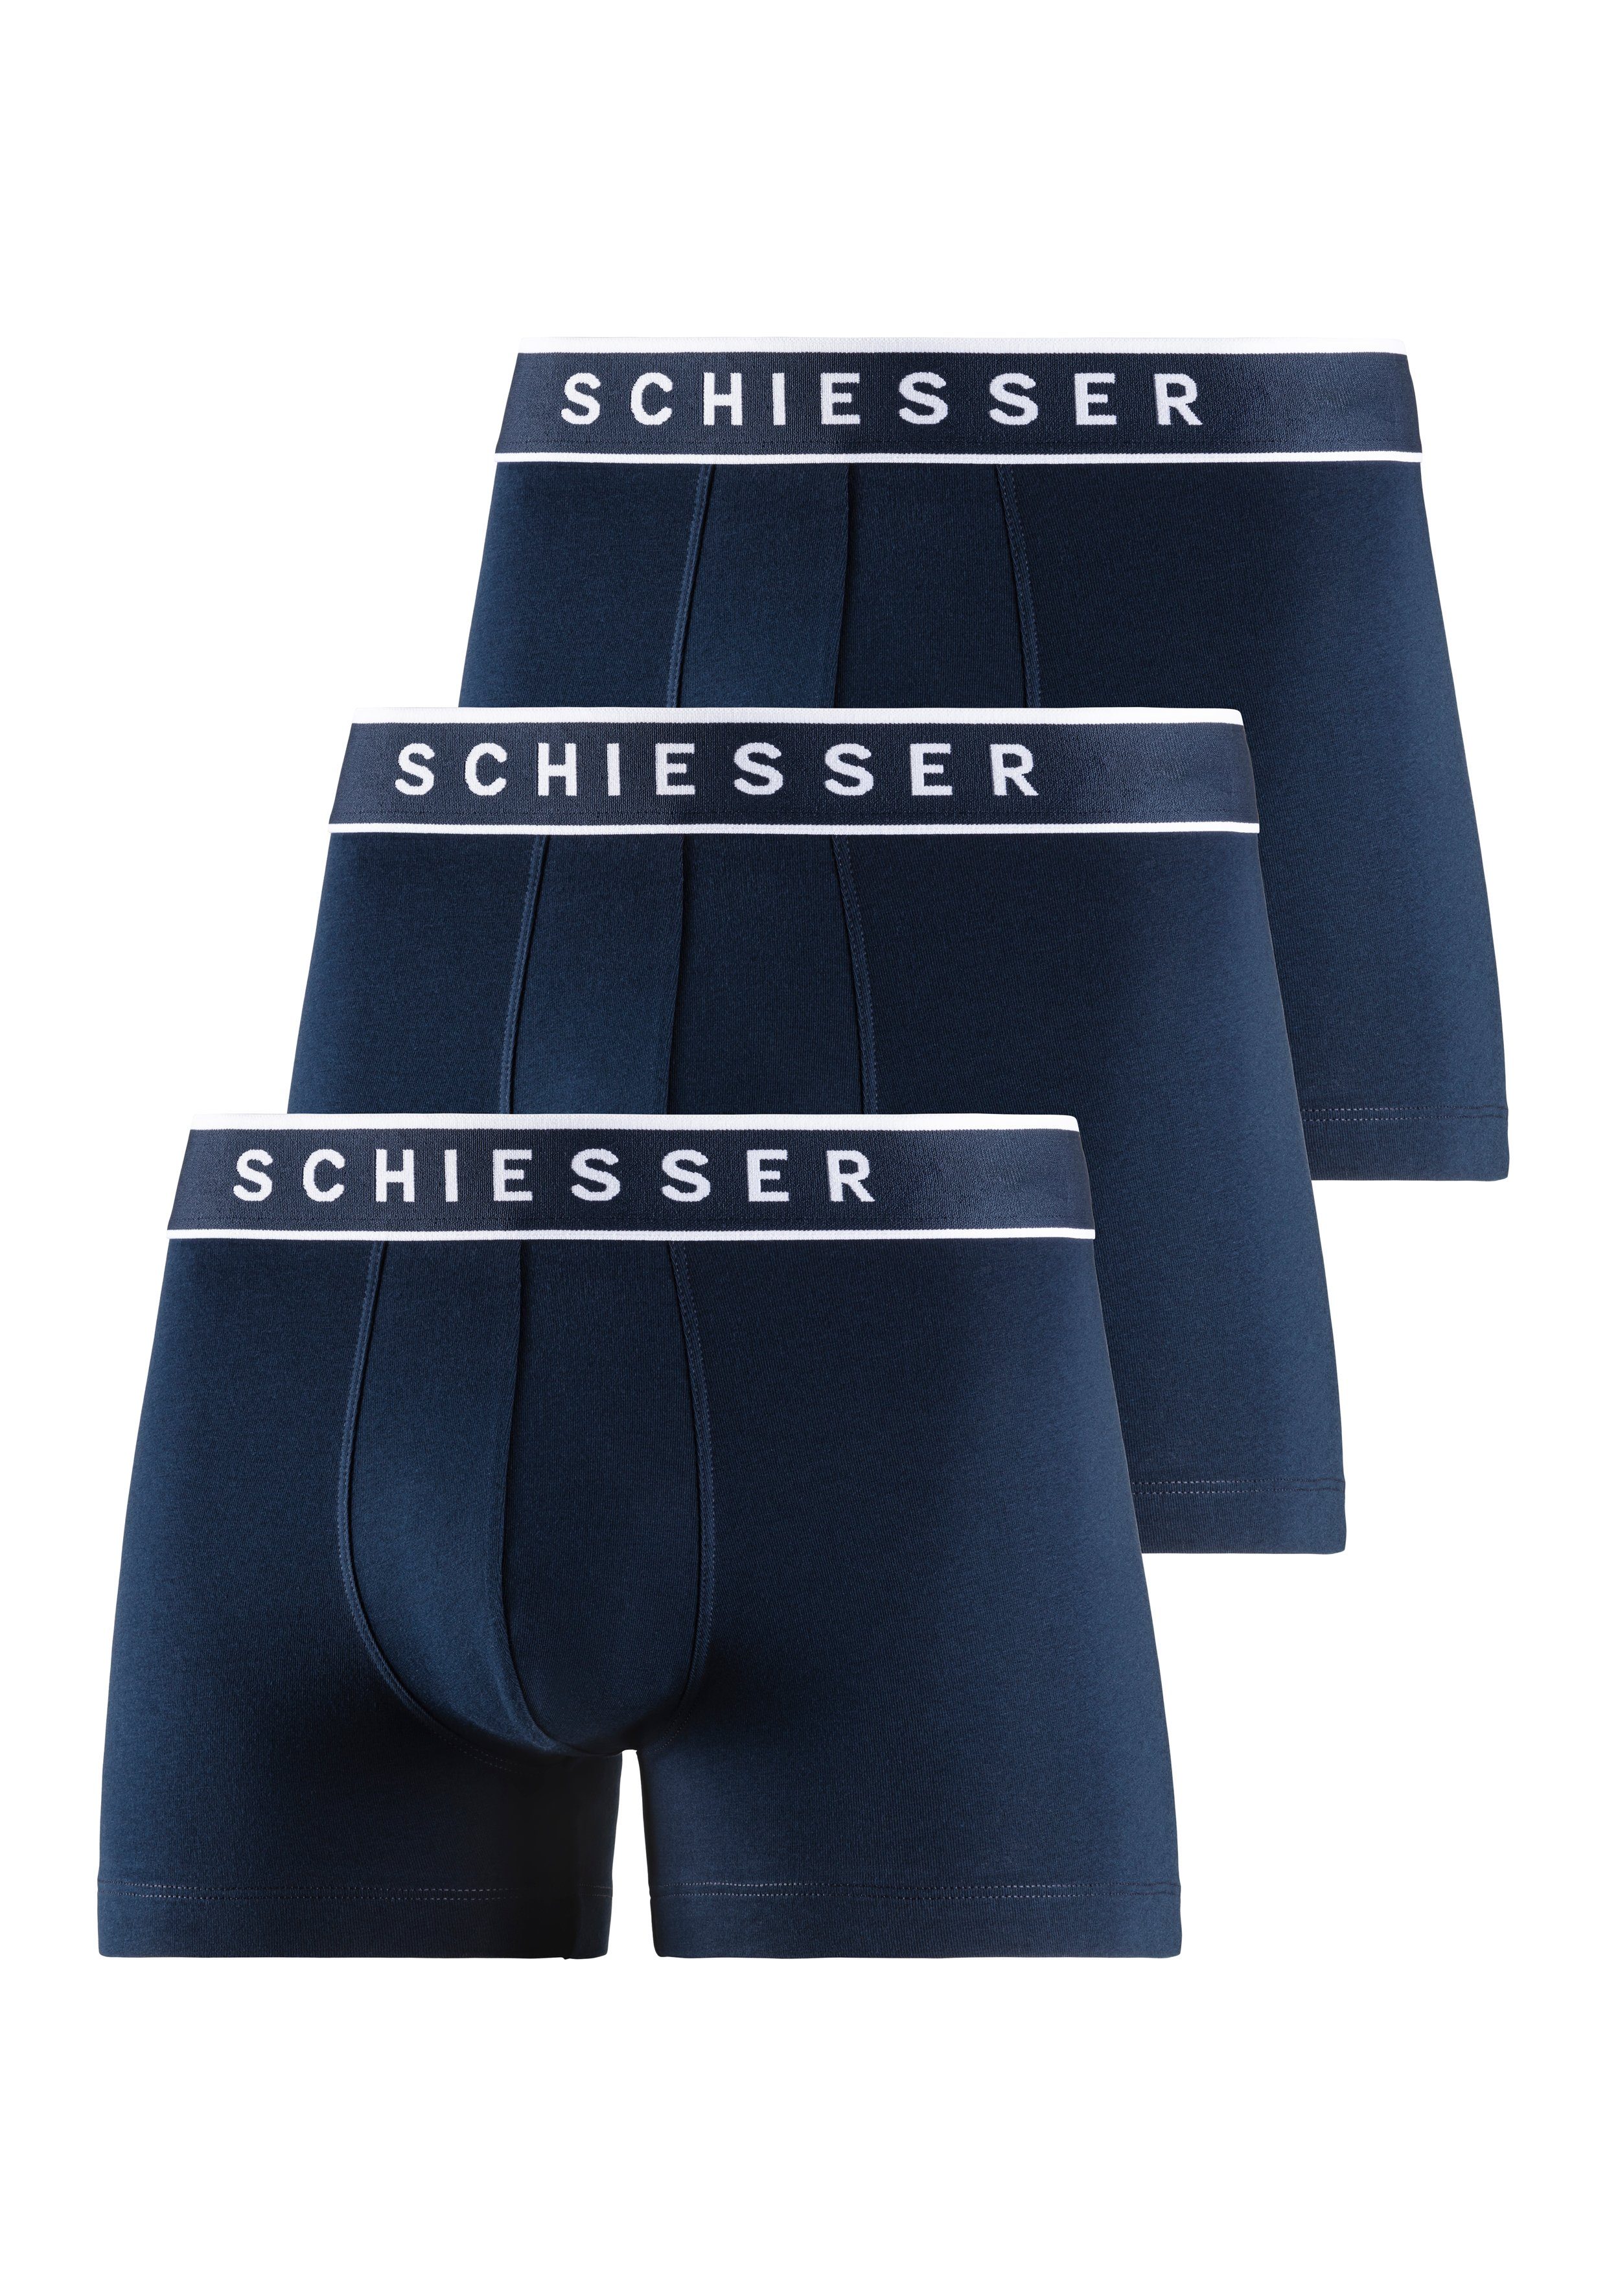 Schiesser Boxer (3er-Pack) mit Logobund navy navy, navy